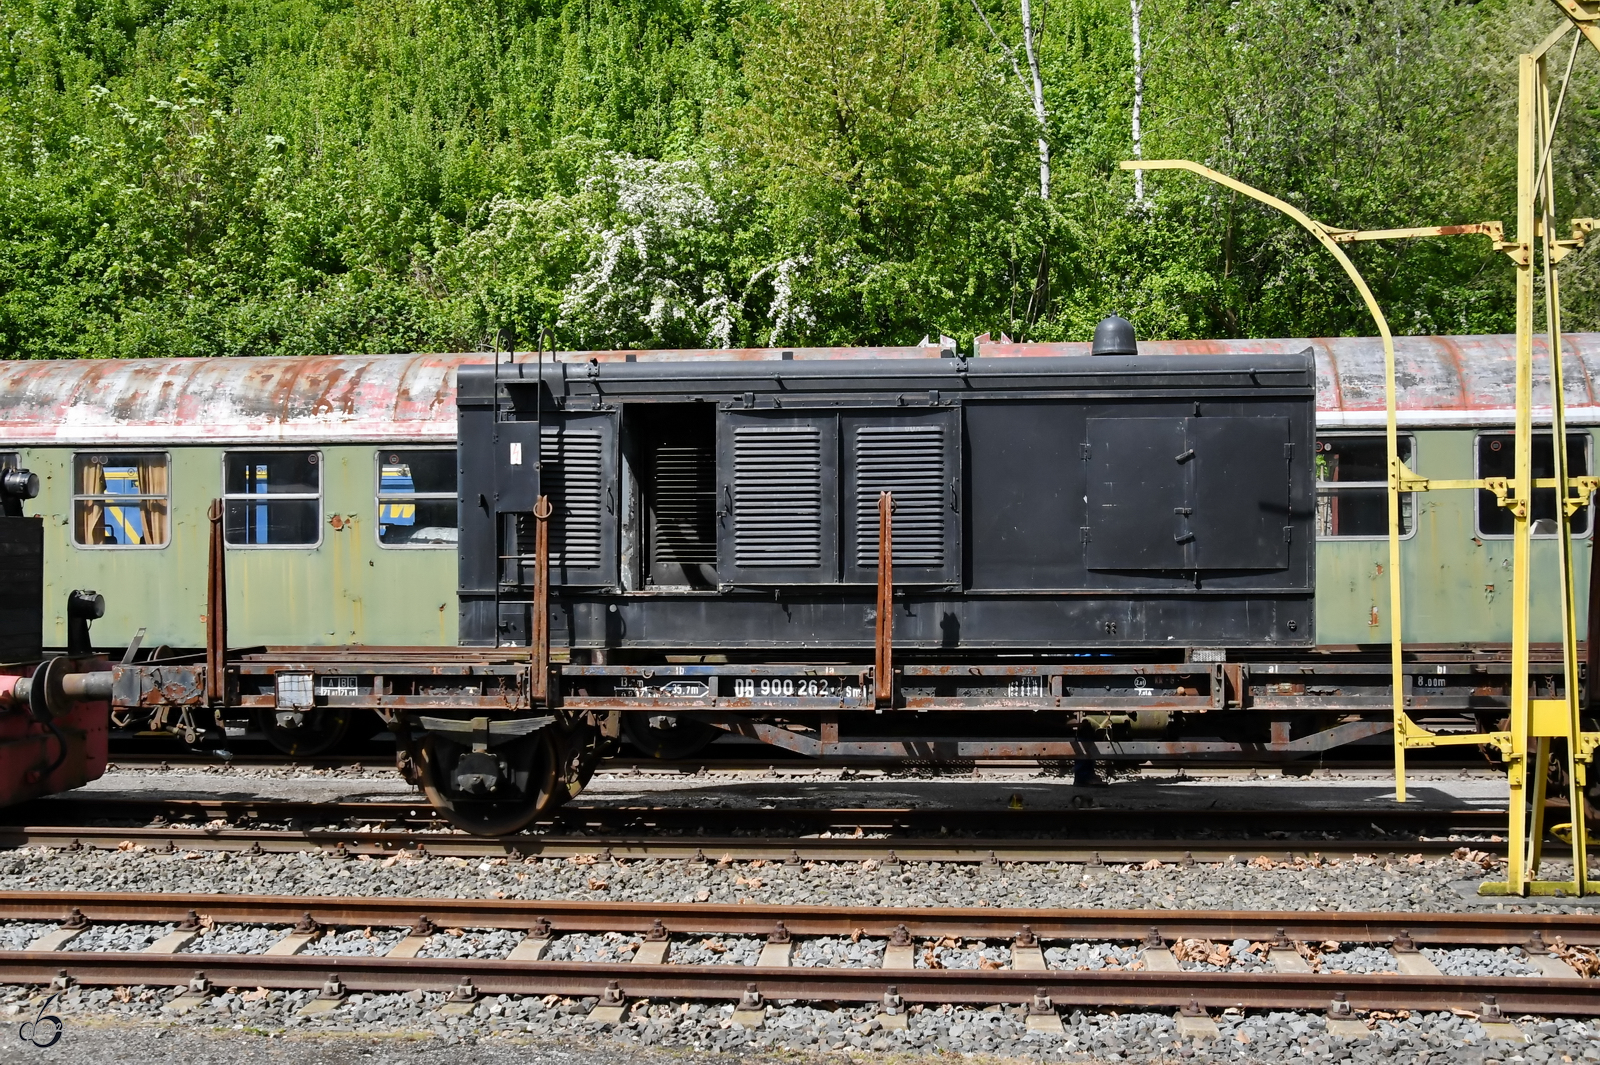 Diese auf einem Flachwagen (Sml, 900 262) gestellte Motorhaube stammt vermutlich von der 1939 gebauten Diesellokomotive V36 231. (Eisenbahnmuseum Bochum, April 2024)